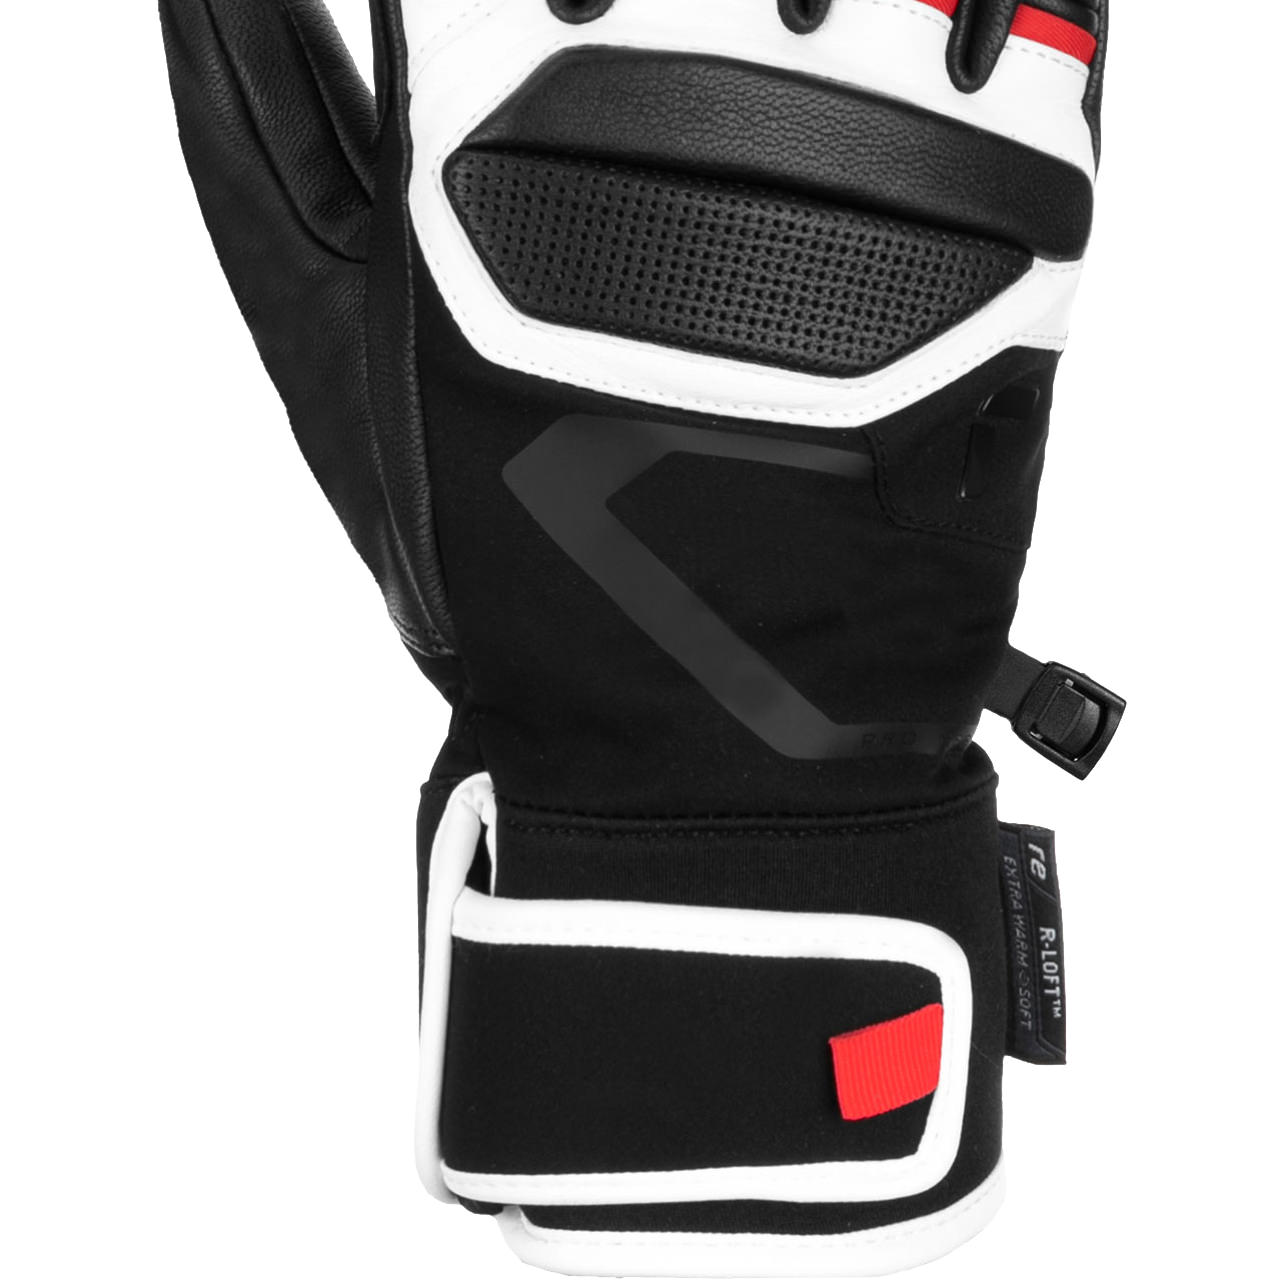 Reusch Men Glove PRO RC black/white/fire red, Men skiwear, Skiwear, Alpine Skis